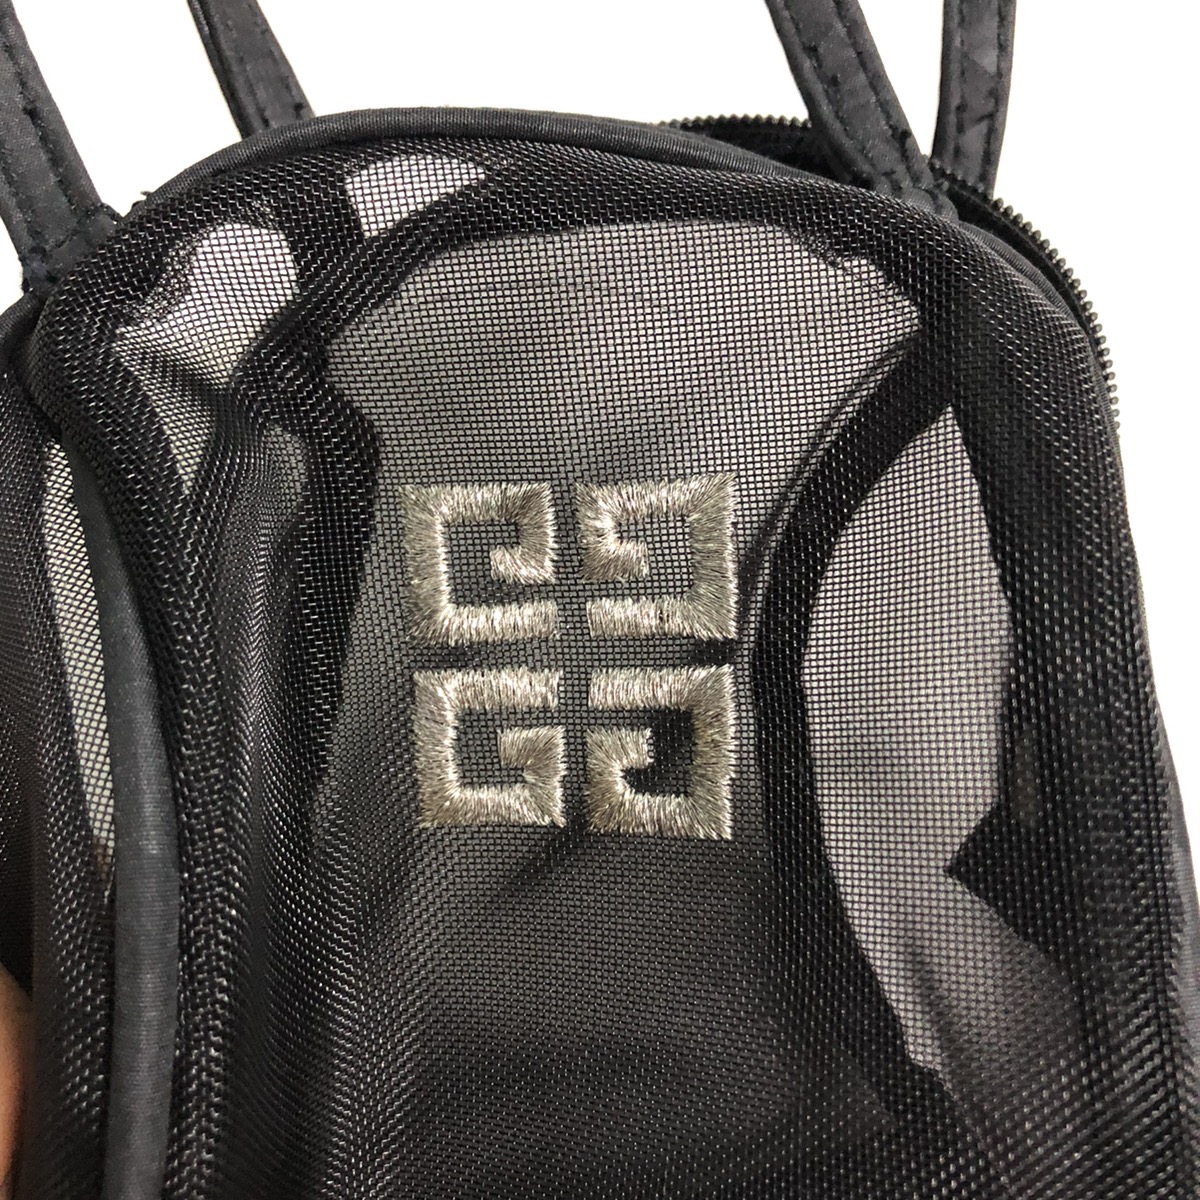 Givenchy toiletries mini bag - 7